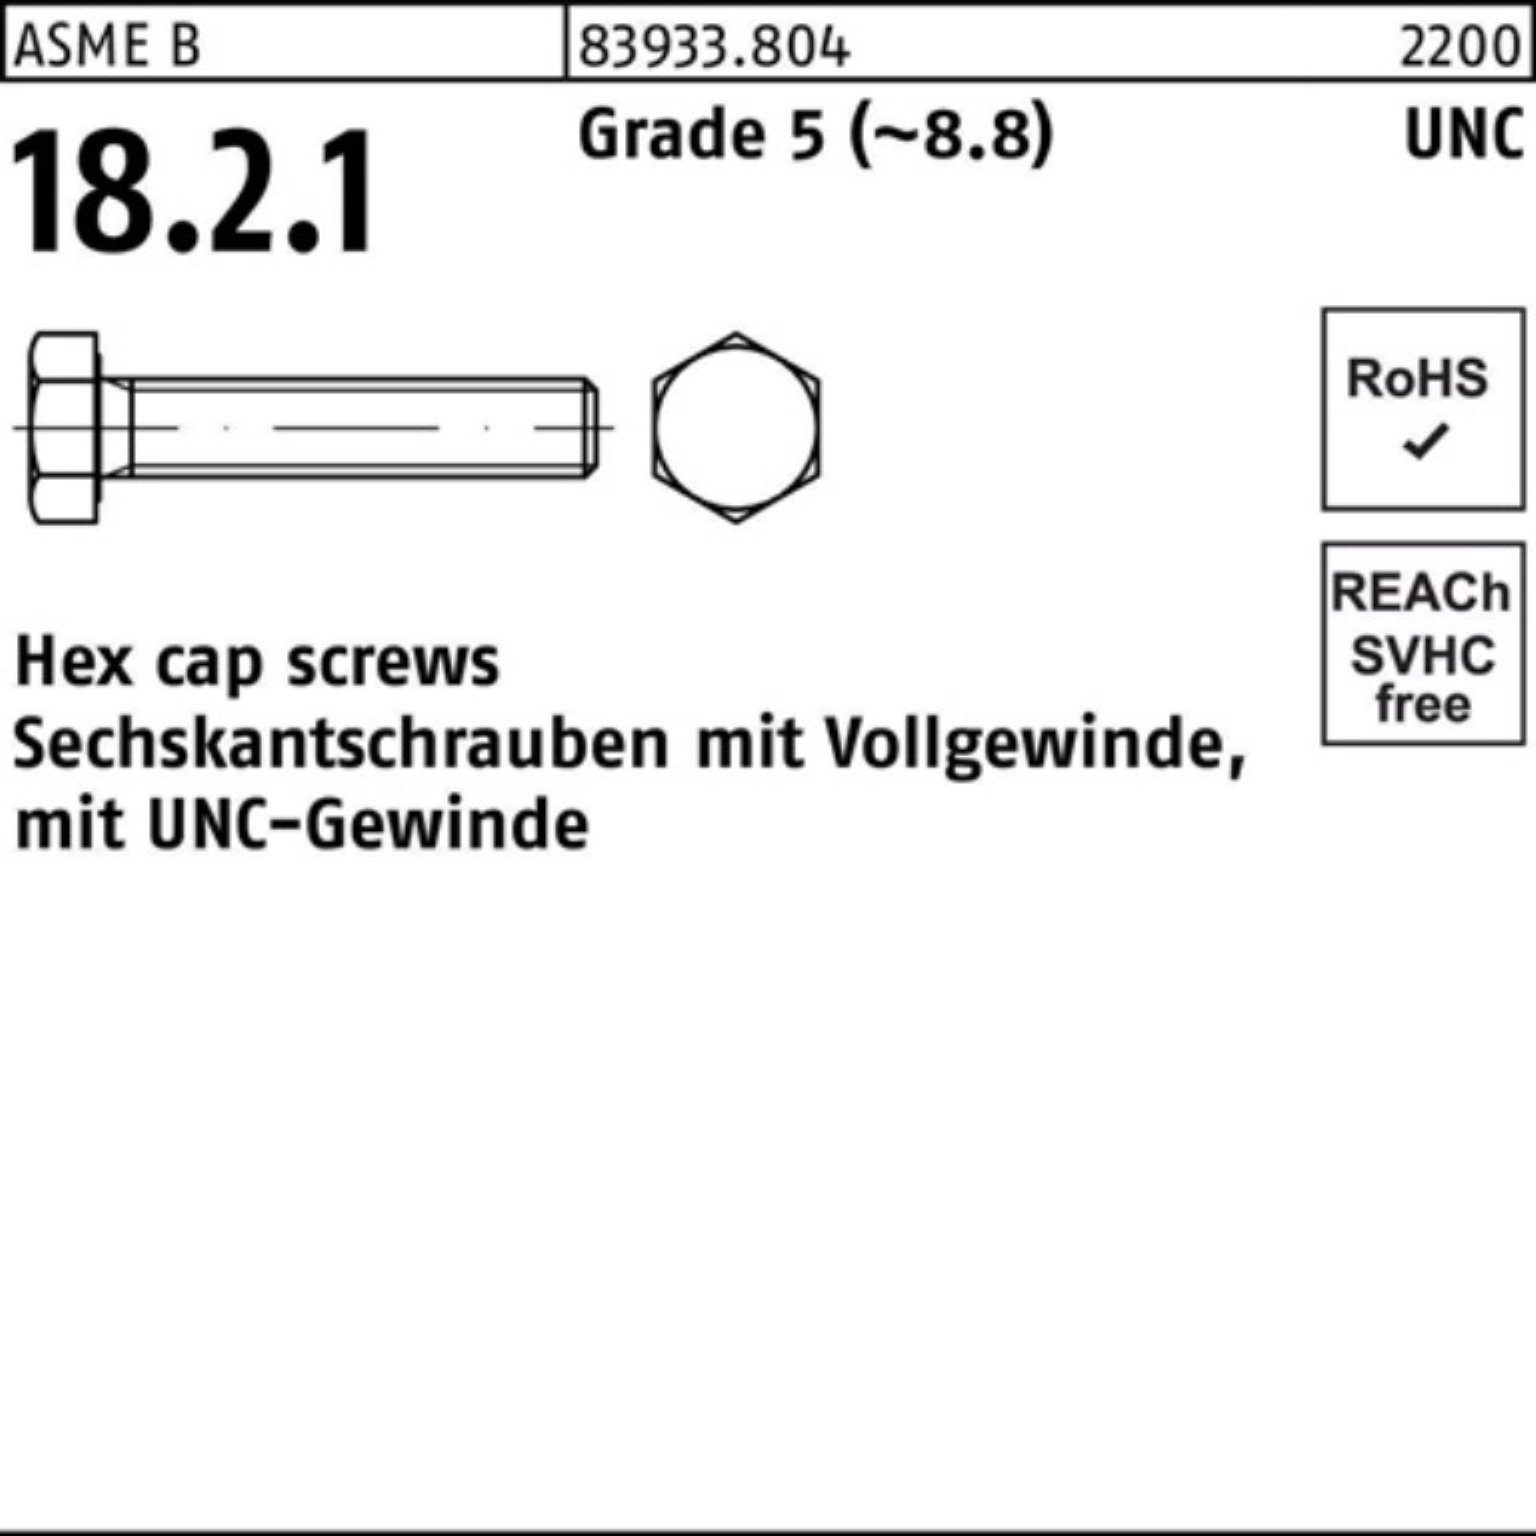 Reyher Sechskantschraube 100er Pack Sechskantschraube R 83933 UNC-Gewinde VG 5/16x 1 Grade 5